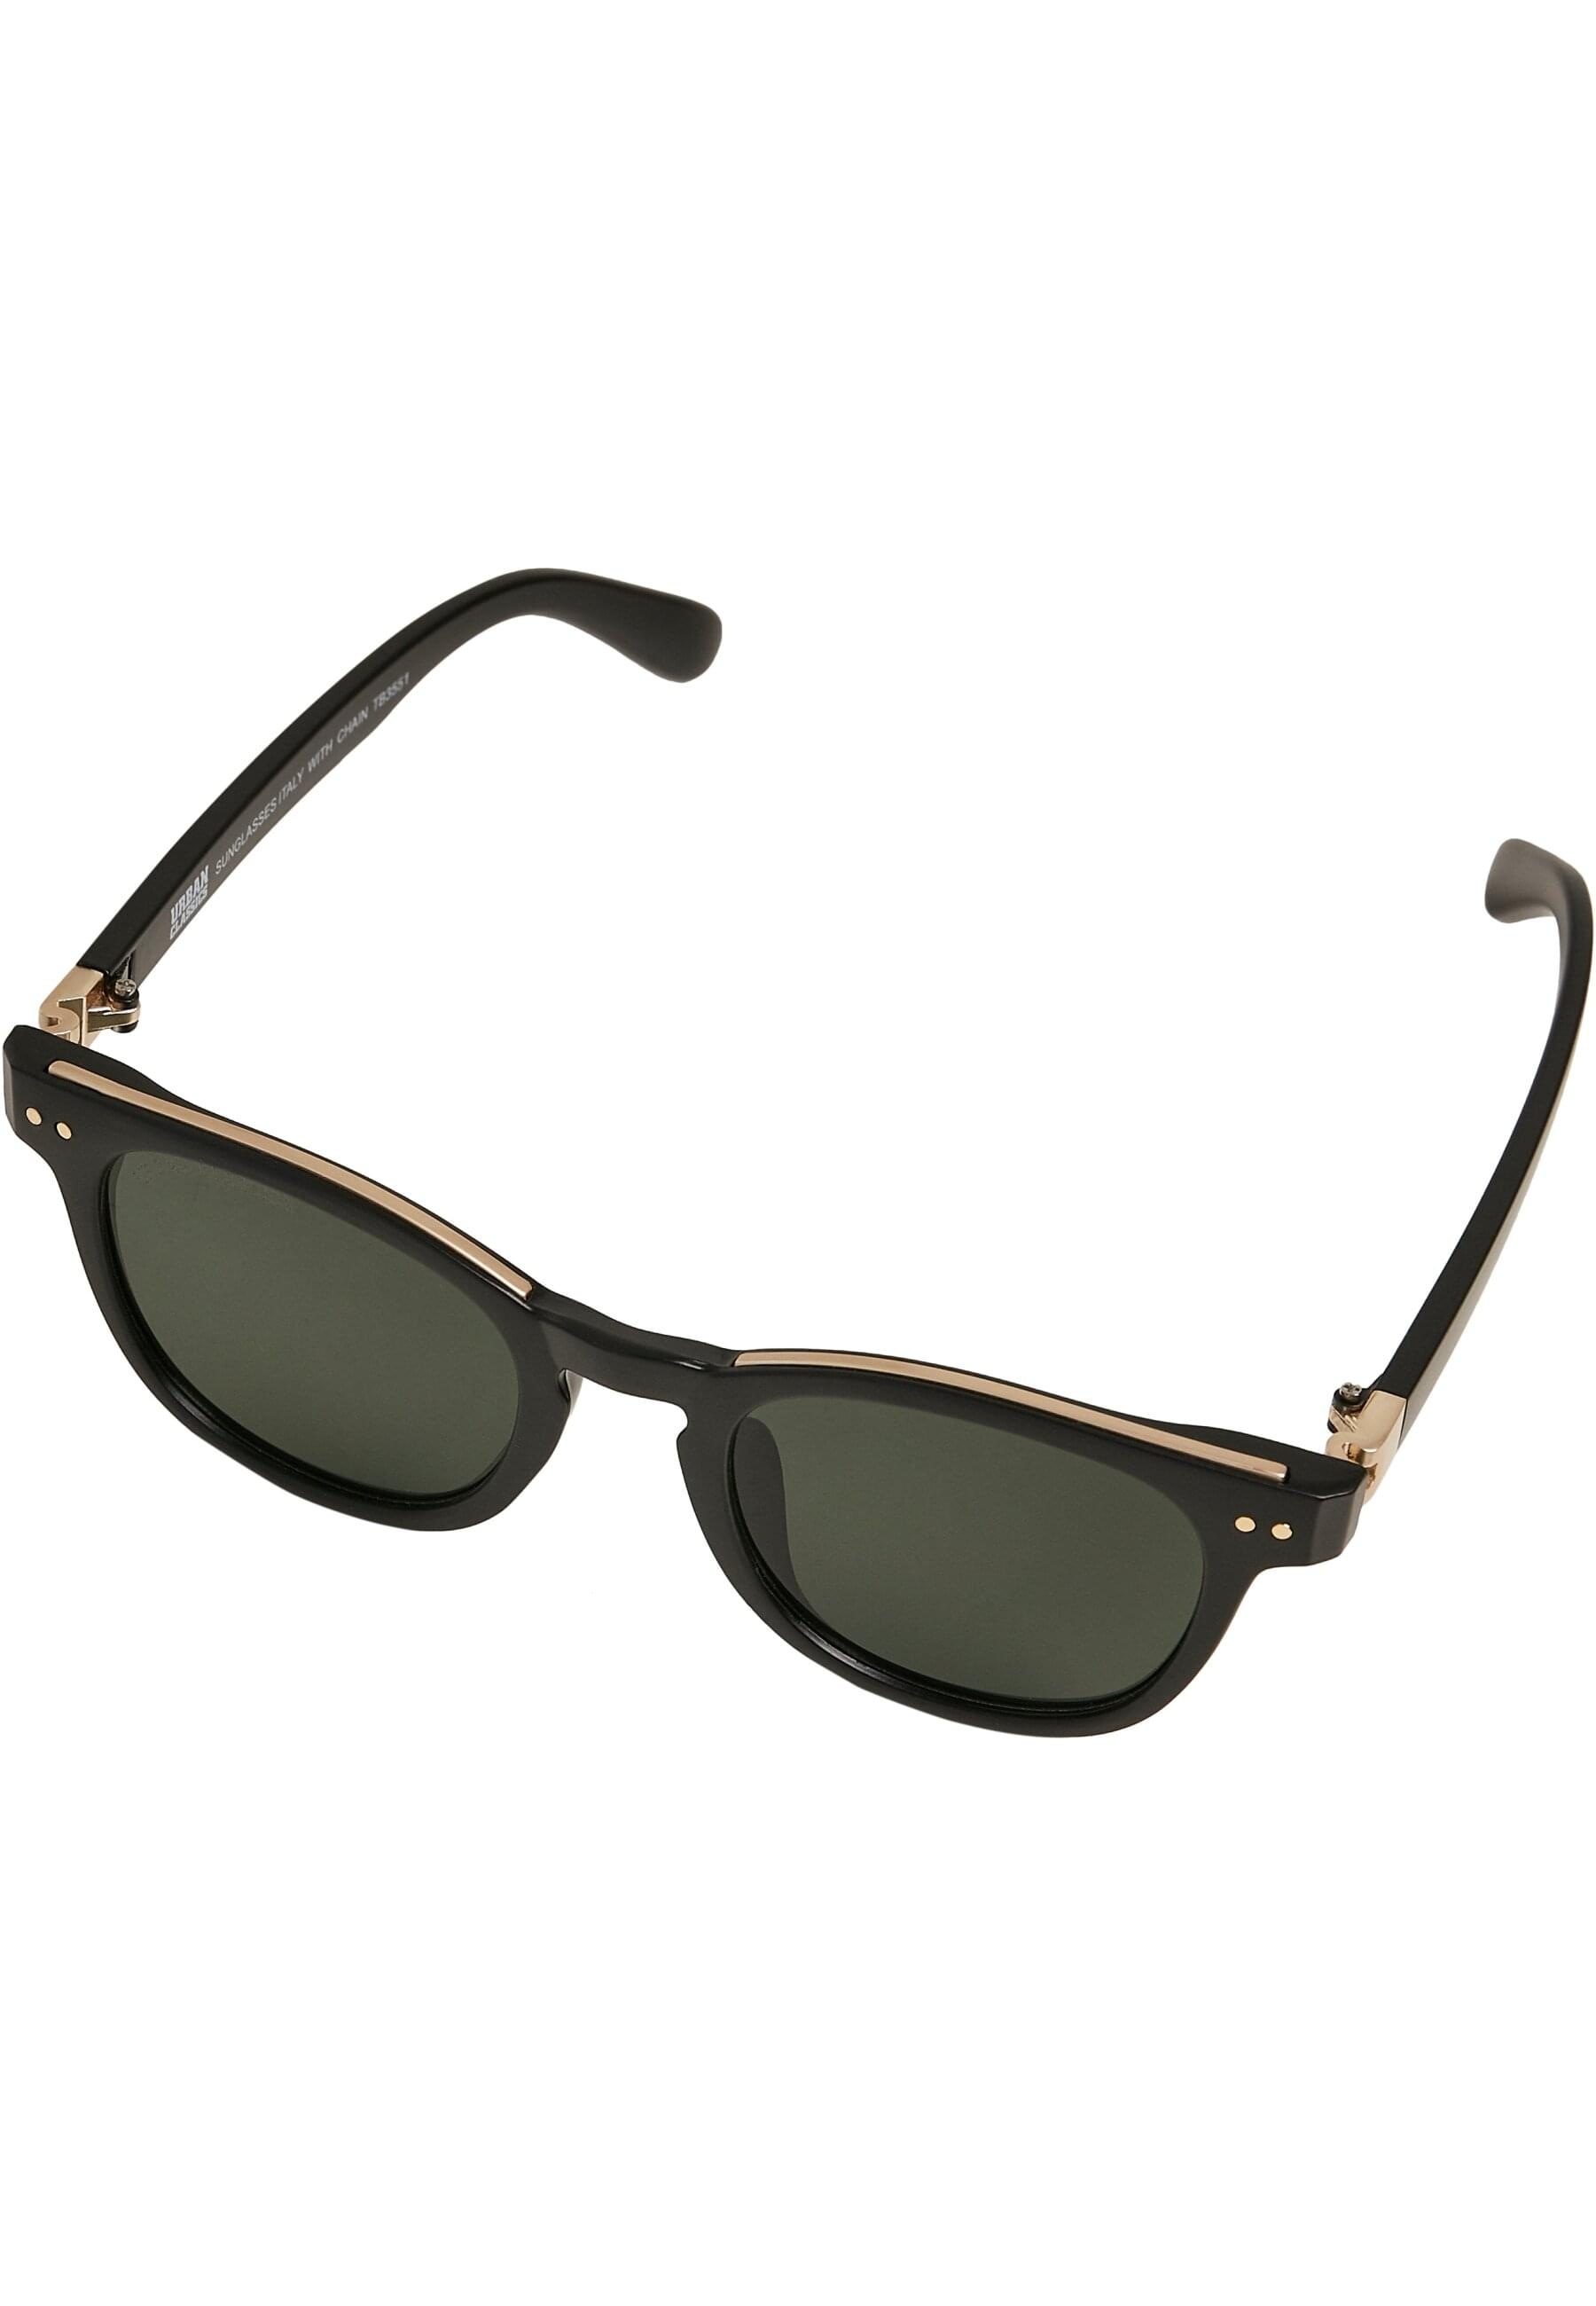 URBAN CLASSICS Sonnenbrille »Unisex BAUR online | Sunglasses bestellen Italy chain« with